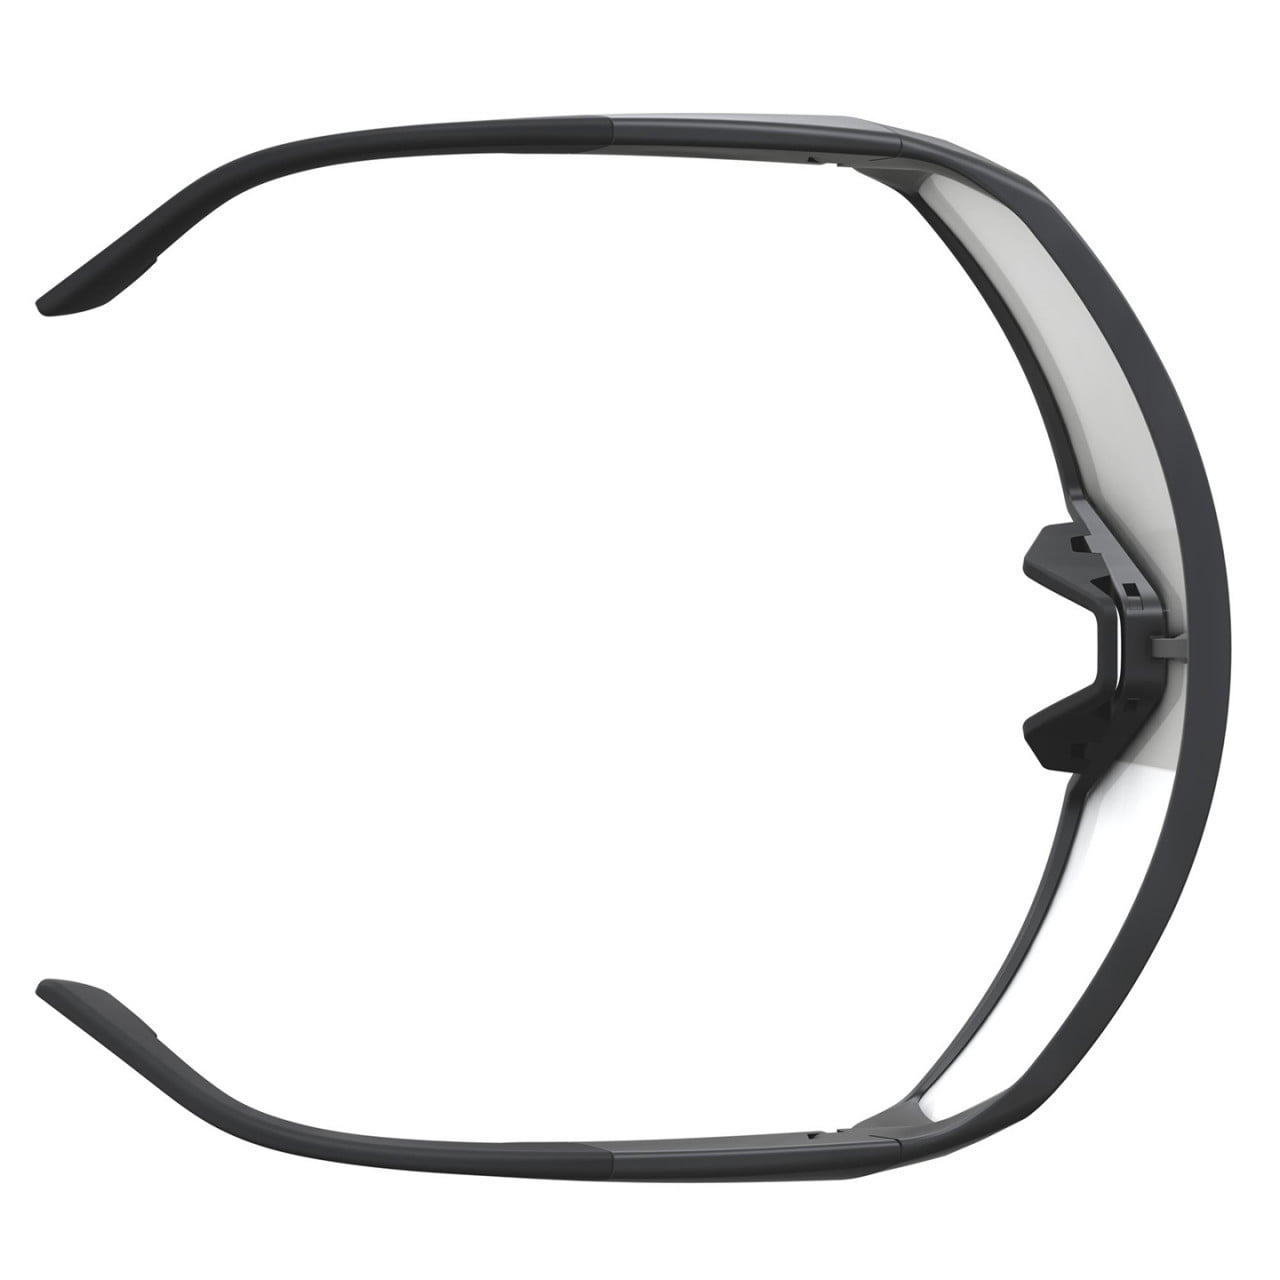 Okulary kolarskie Pro Shield 2024